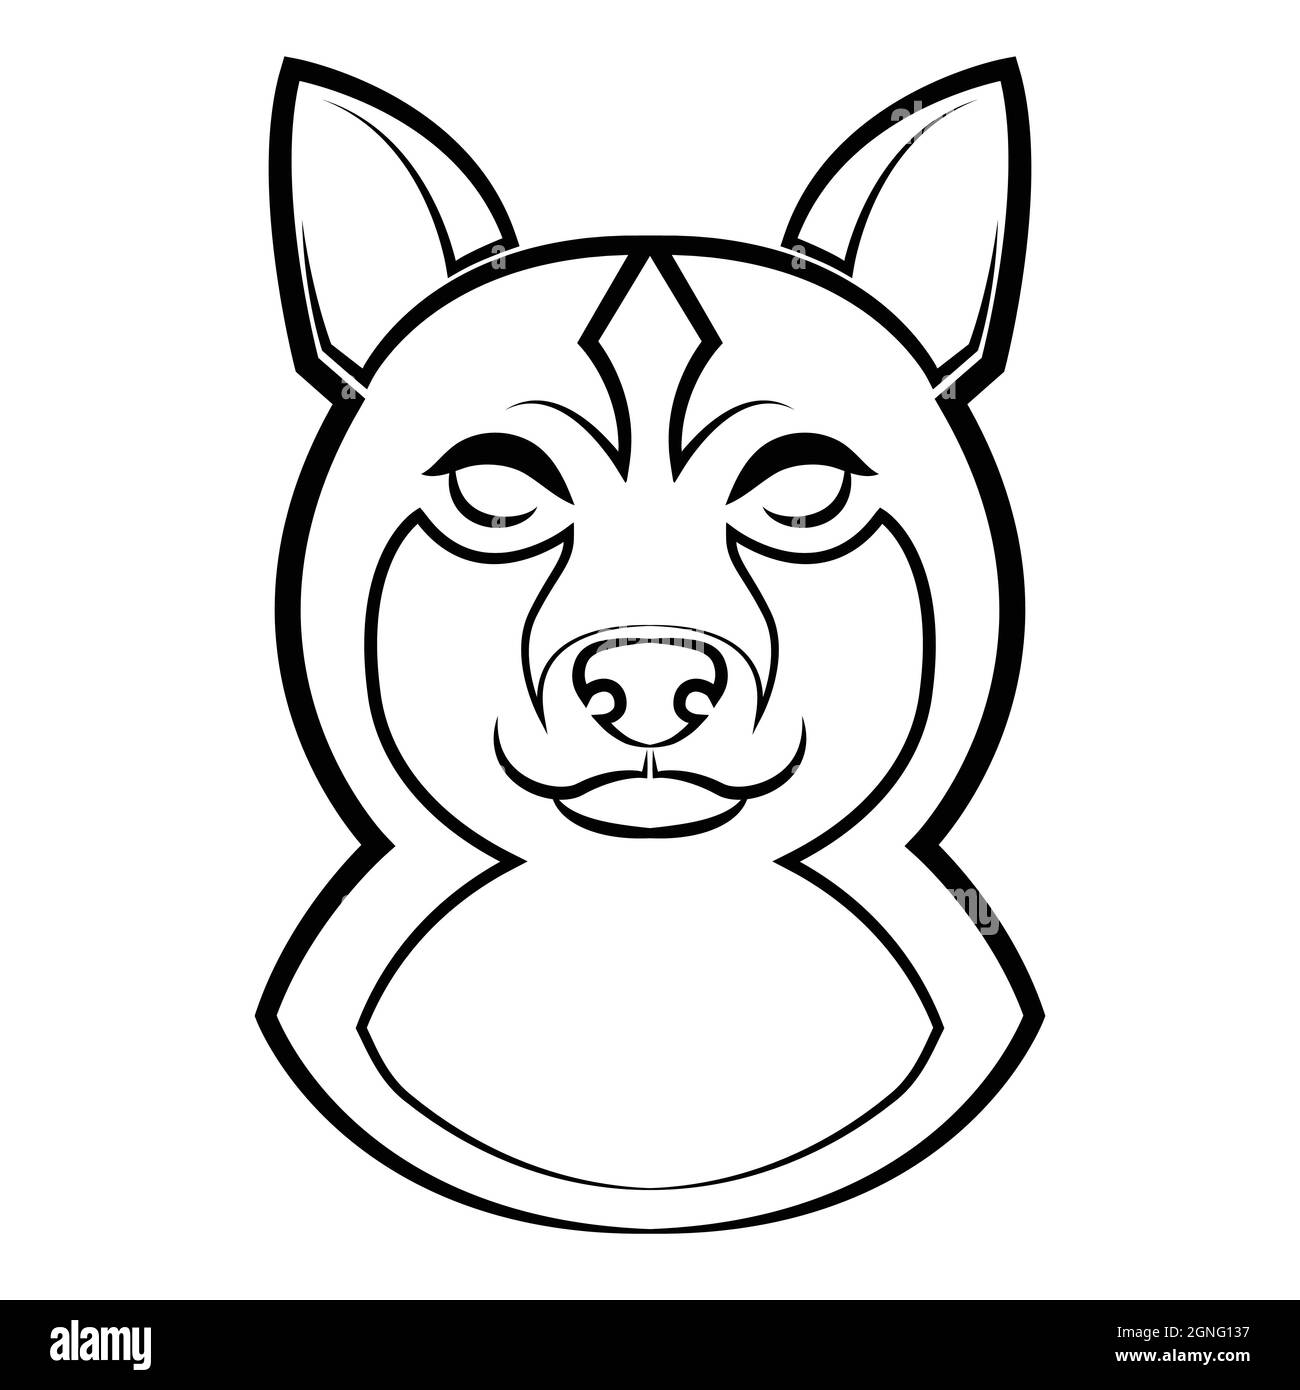 Linea bianca e nera arte della testa di cane shiba. Buon uso per simbolo, mascotte, icona, avatar, tatuaggio, T-Shirt design, logo o qualsiasi disegno. Illustrazione Vettoriale